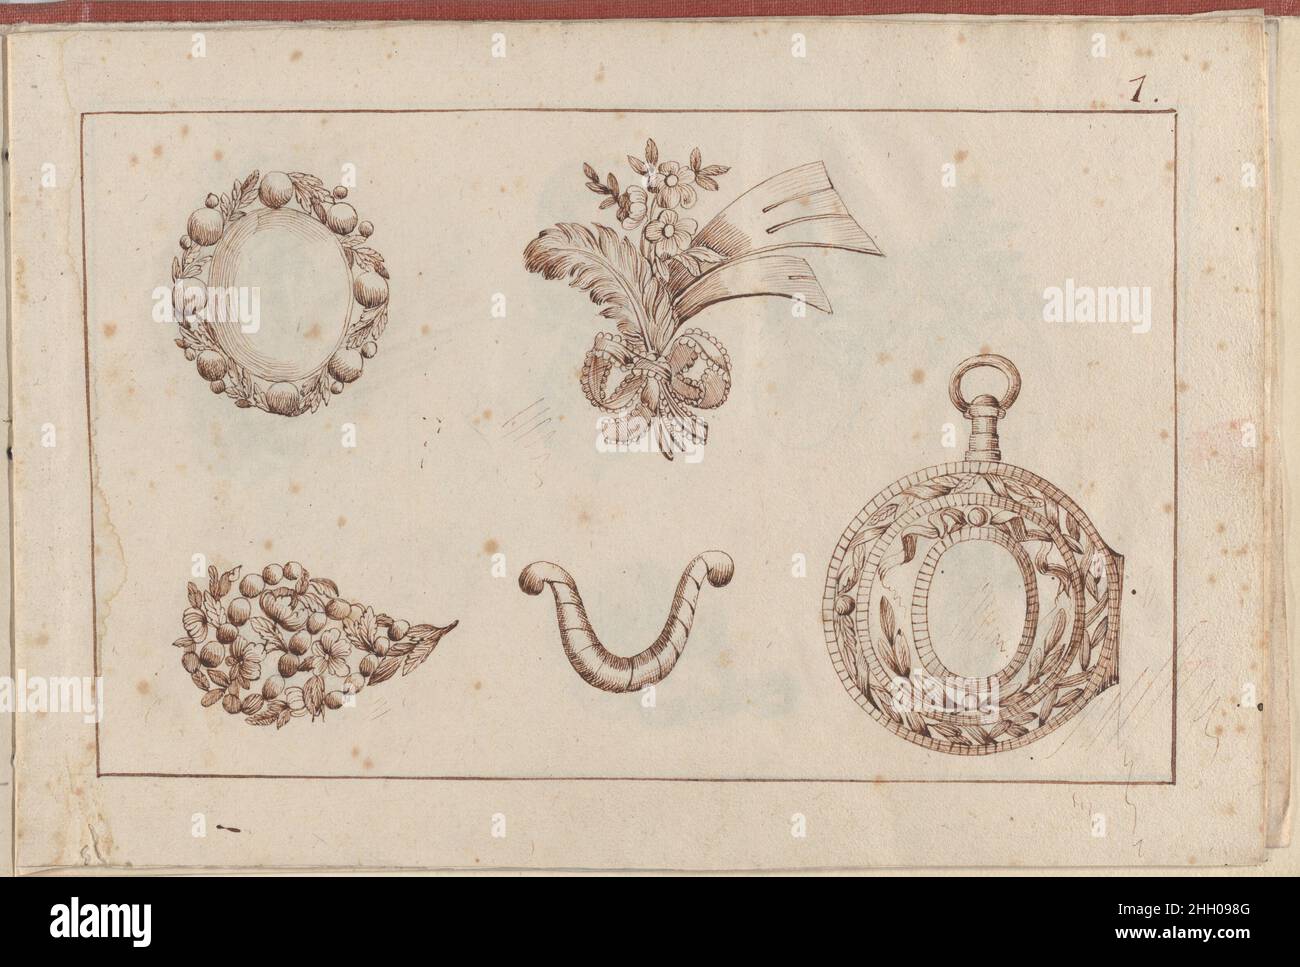 Joaillerie: Album of Jewelry Designs, Page 1 1770 or after Anonymous,  French Primera página de un pequeño álbum que contiene dibujos con diseños  de joyas copiados después de las impresiones de L.